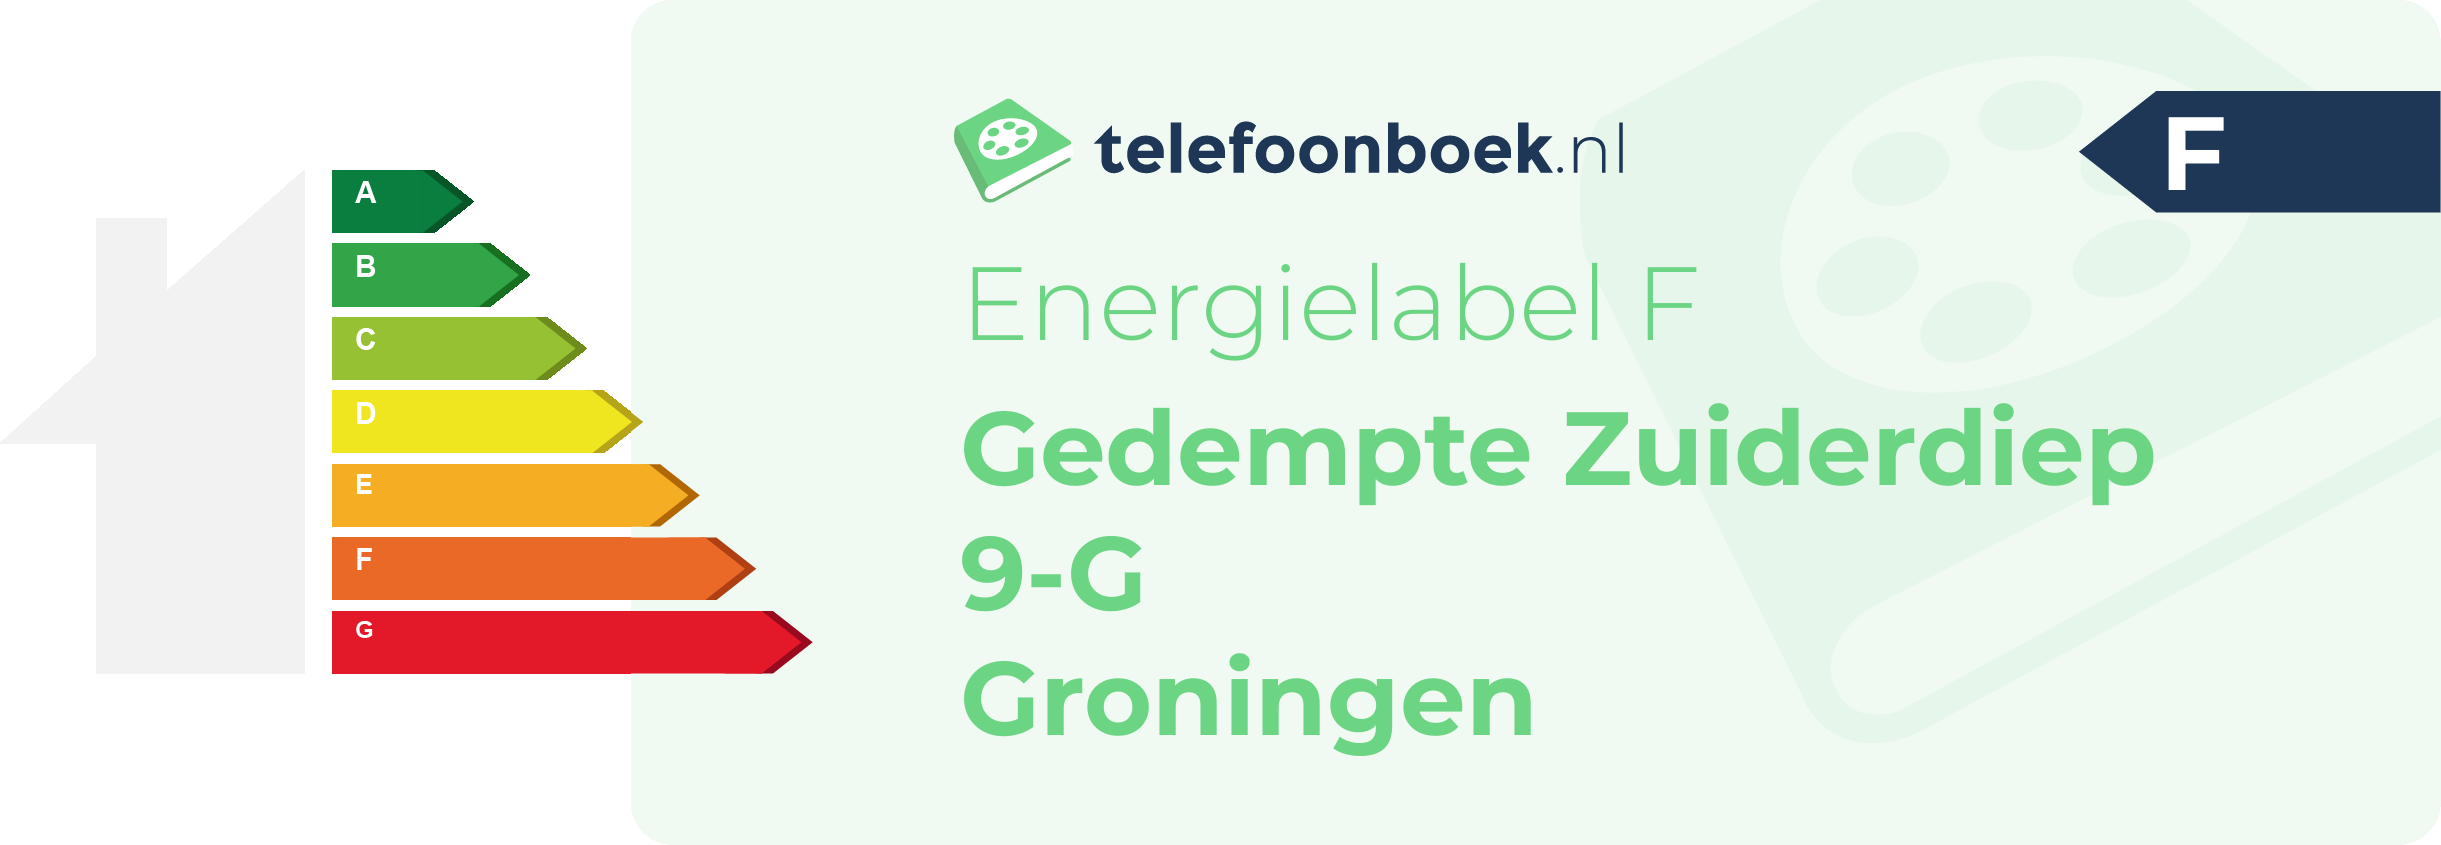 Energielabel Gedempte Zuiderdiep 9-G Groningen